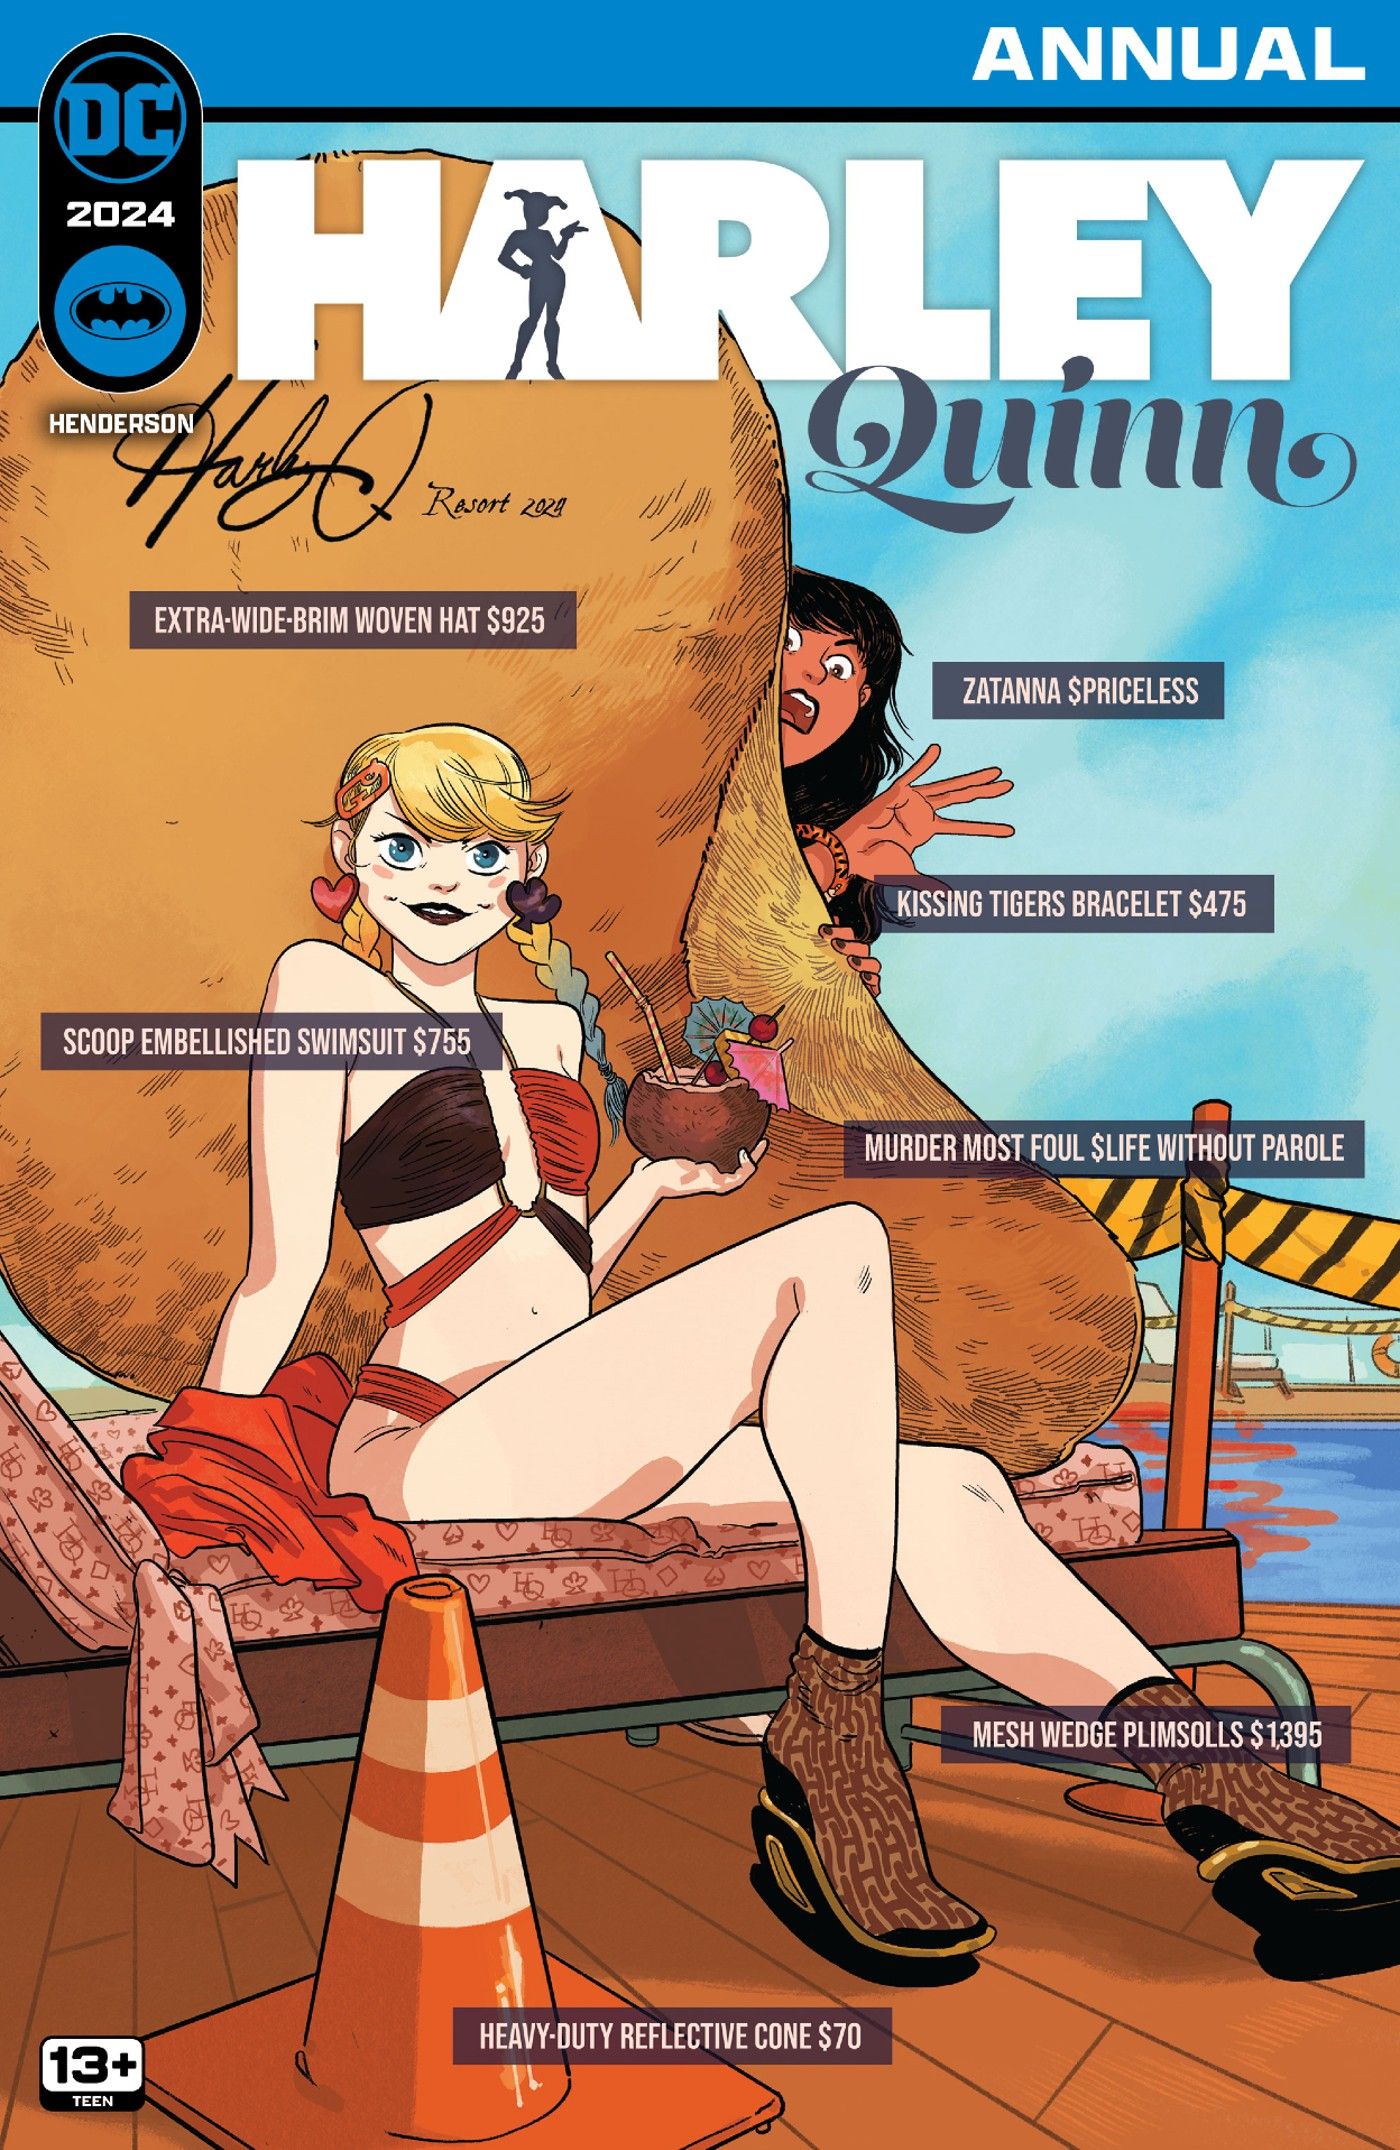 Capa principal da Harley Quinn 2024 Annual 1: Harley Quinn em traje de banho com Zatanna espiando na ponta do chapéu da Harley com etiquetas de preços em diversos itens de moda.